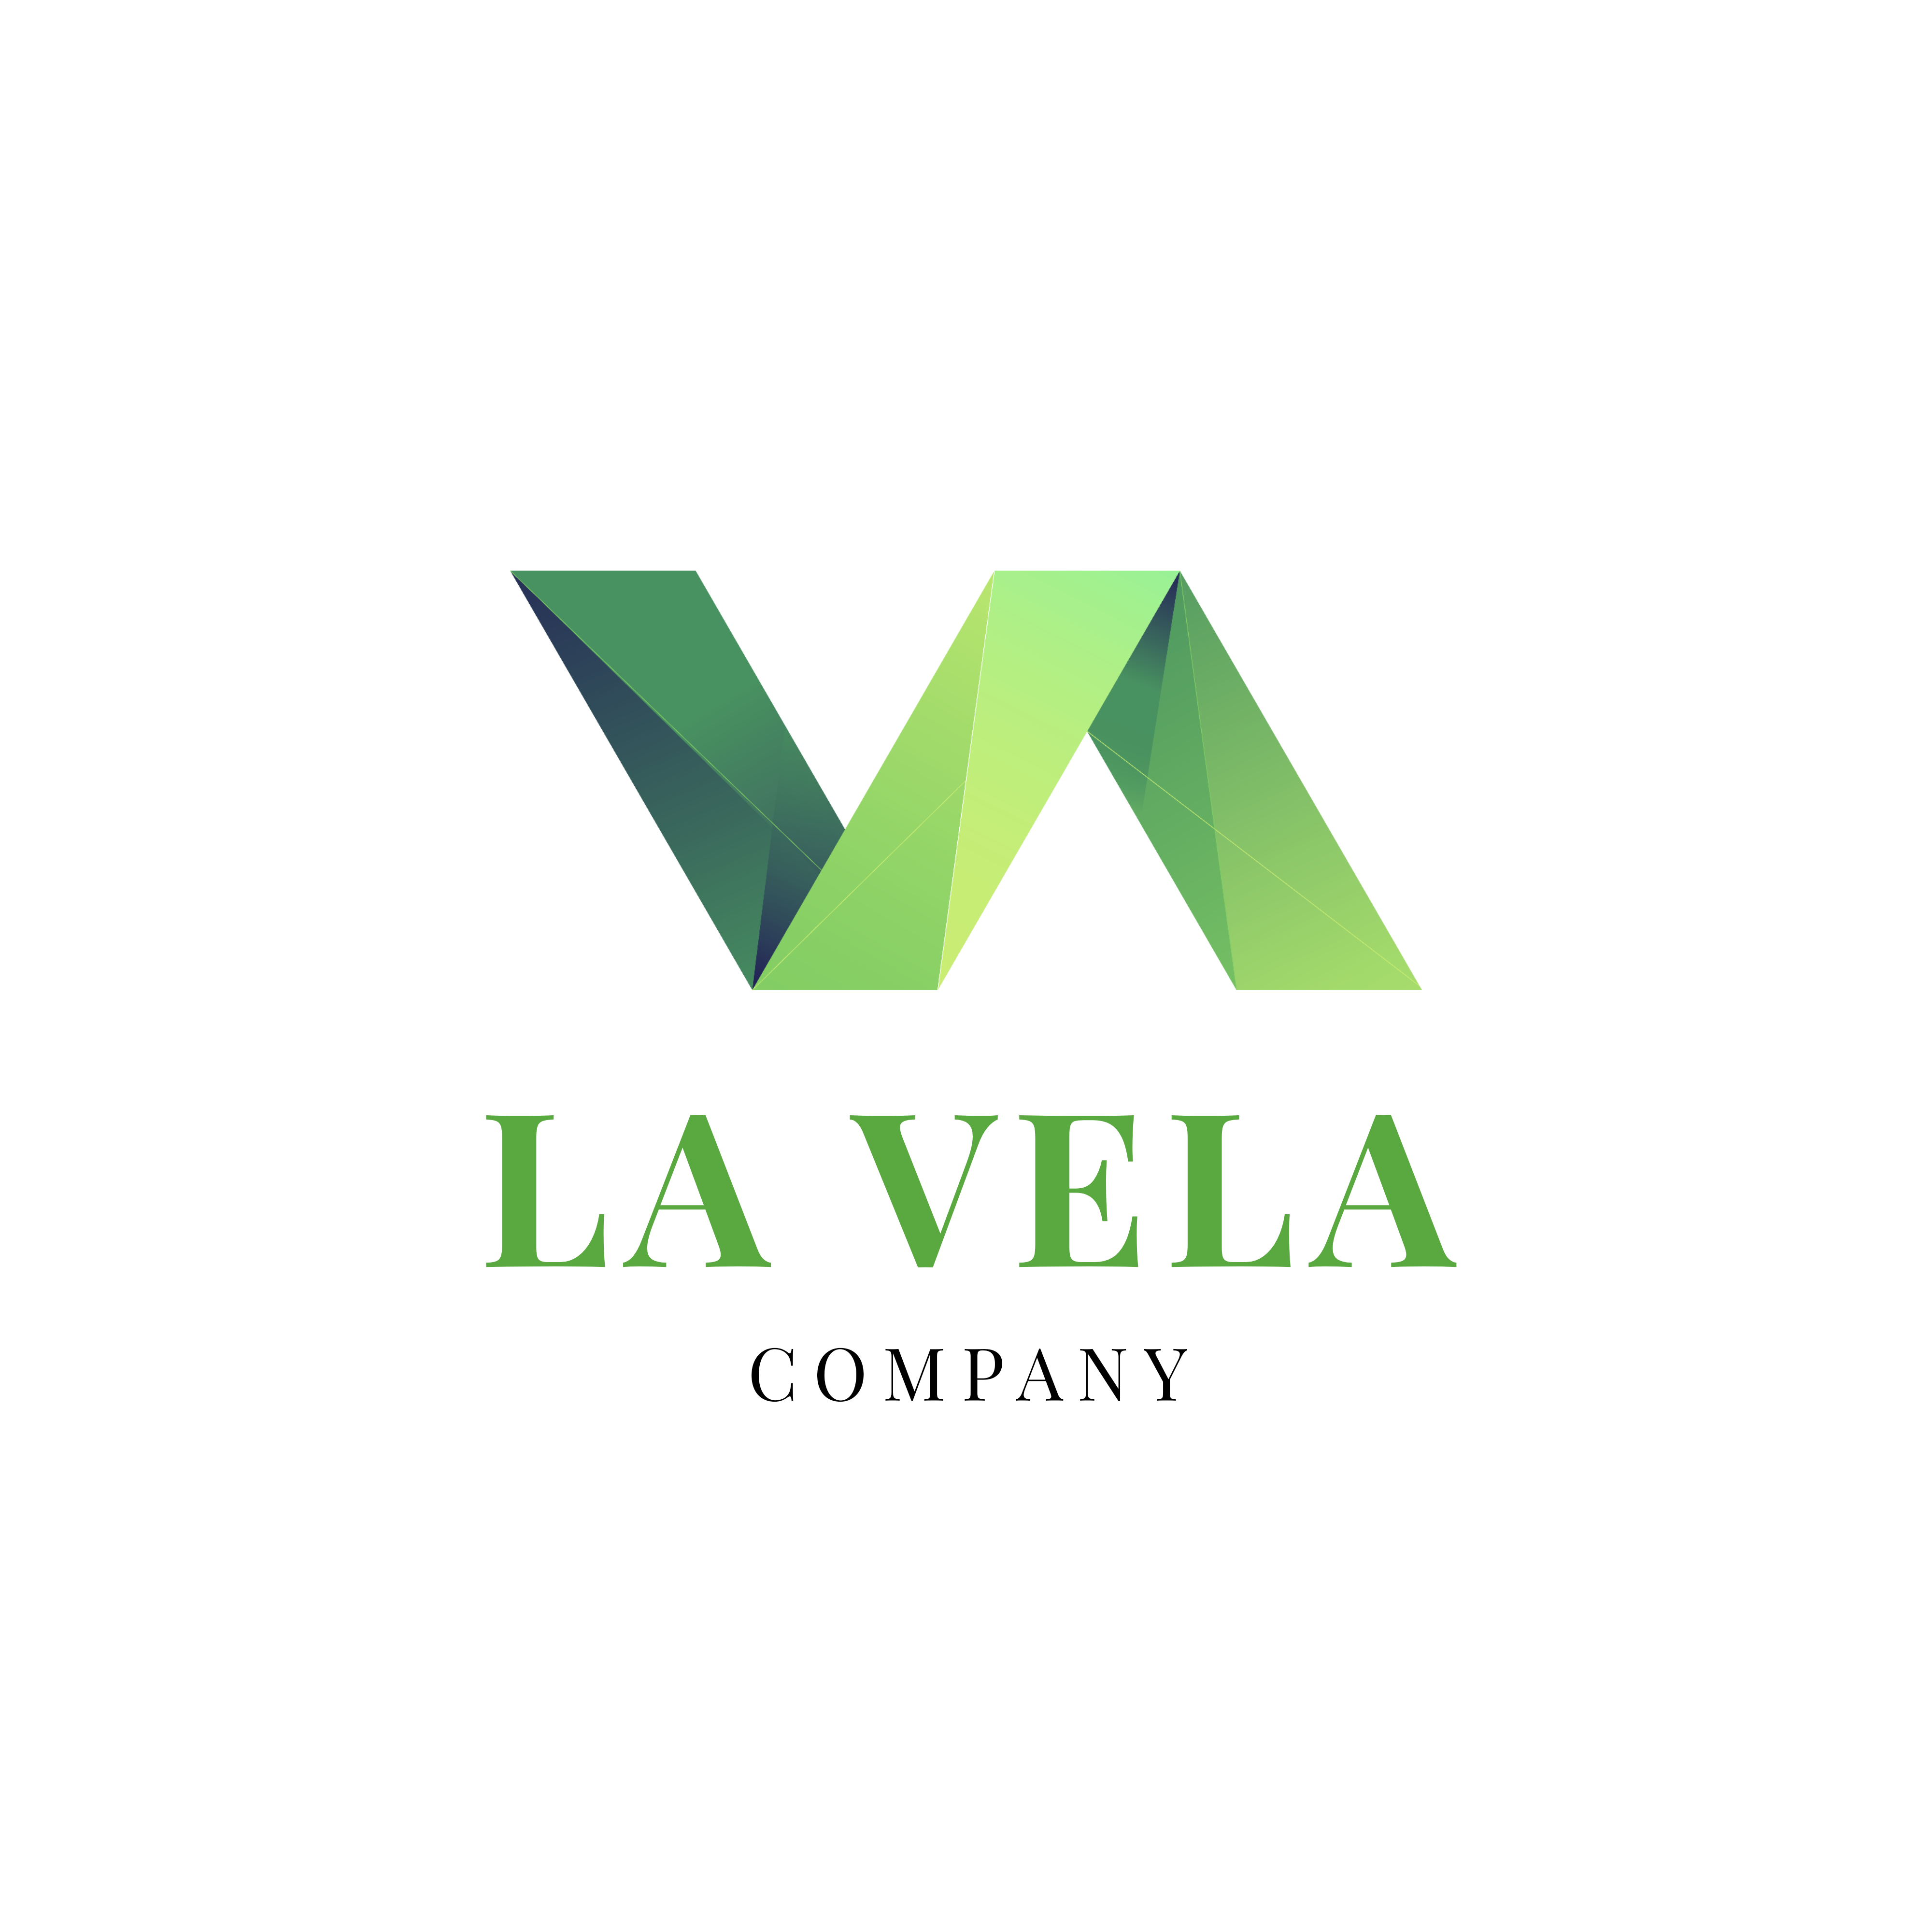 라벨라컴퍼니(LA VELA COMPANY)의 기업로고